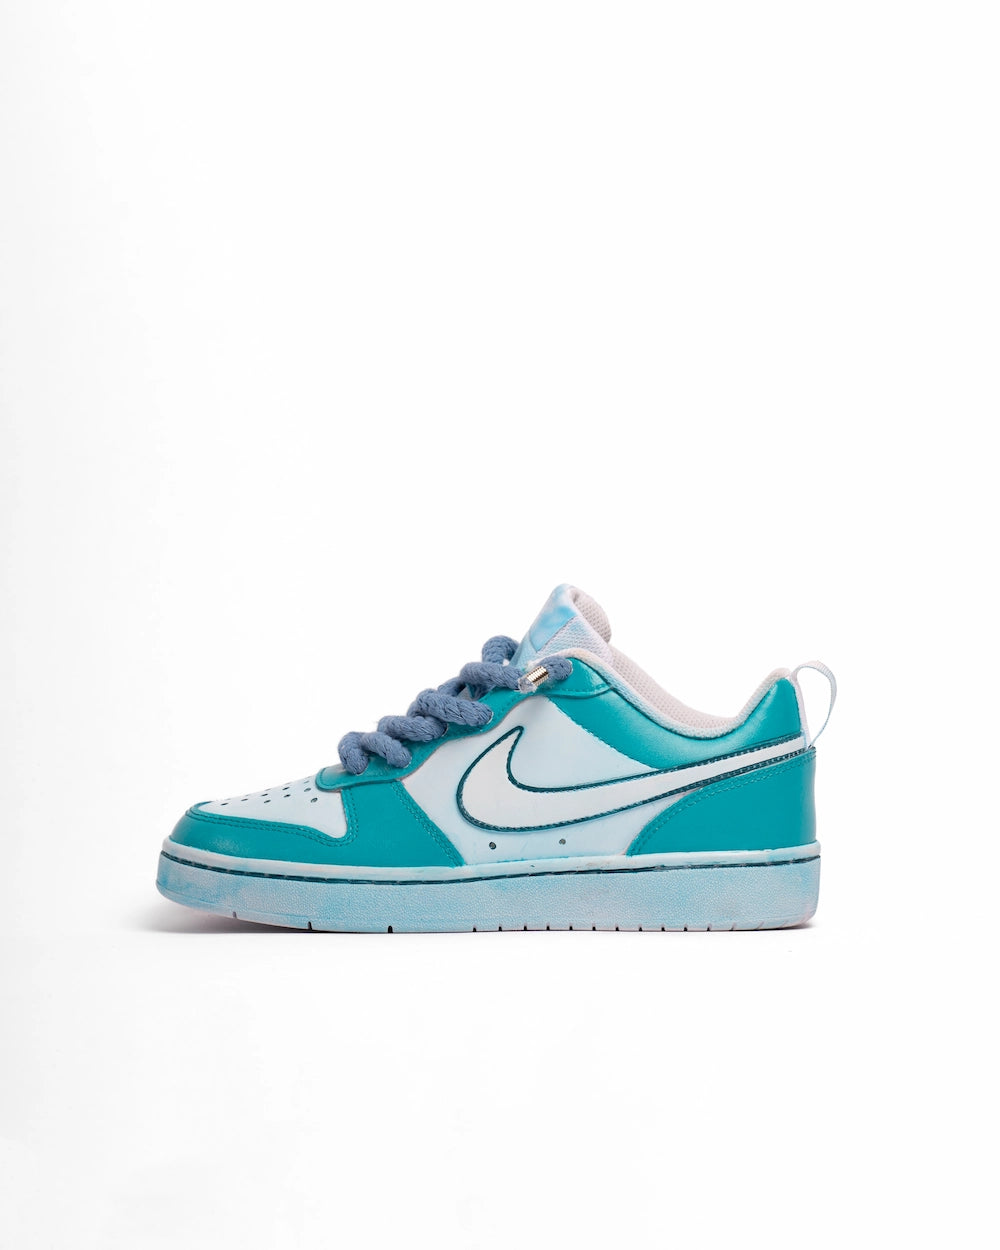 Nike Court Borough personalizzata con tintura in due tonalità di azzurro e lacci in corda blu